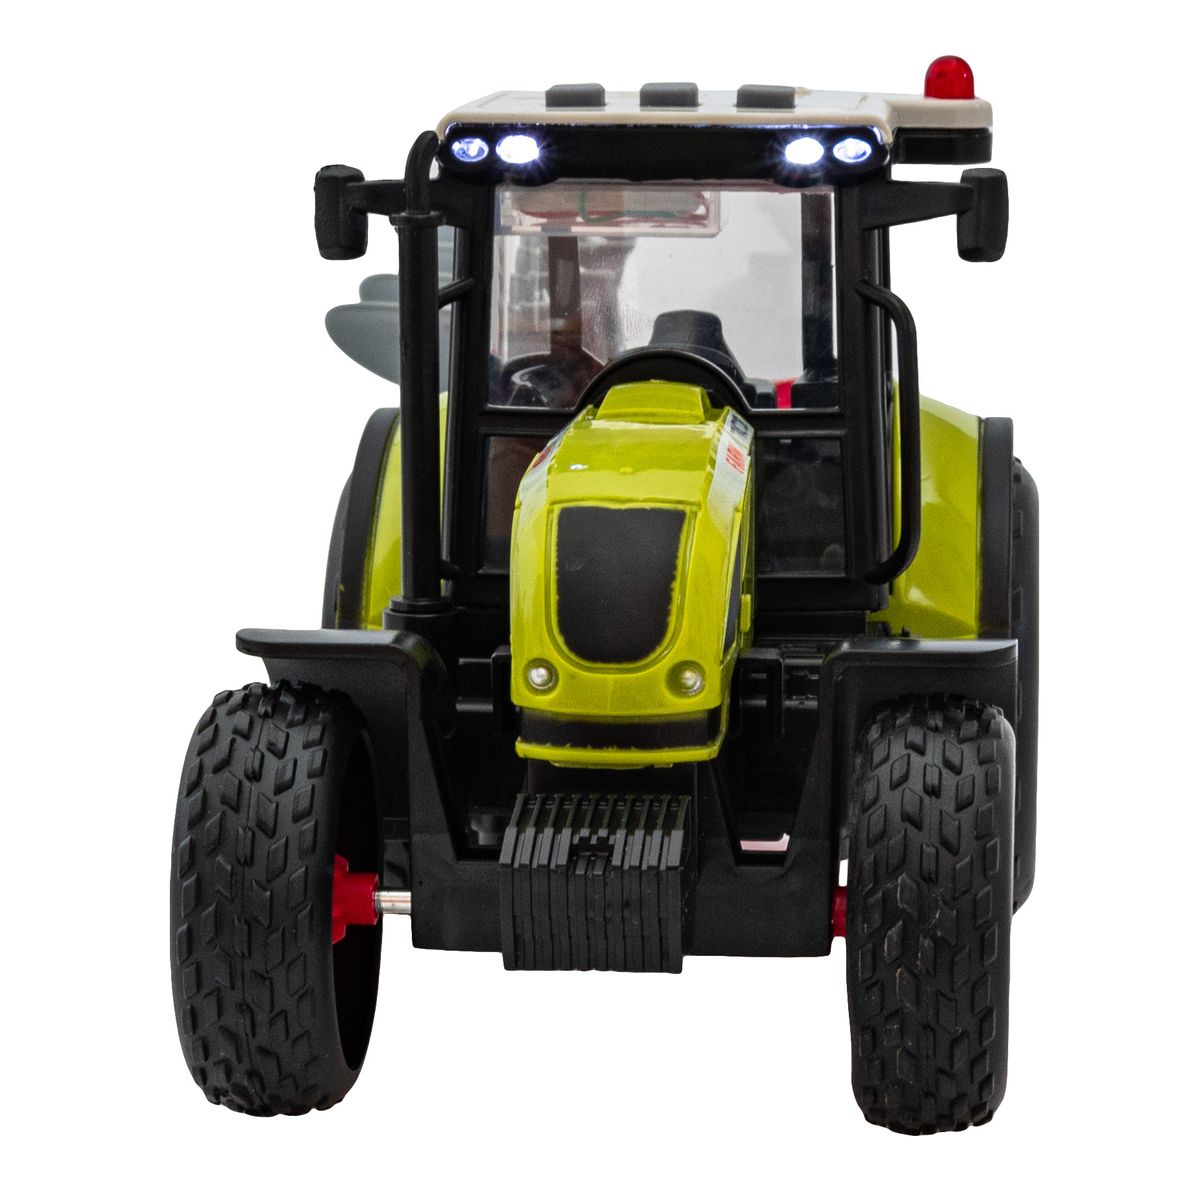 Traktor mówiący Smily Play (SP83997)